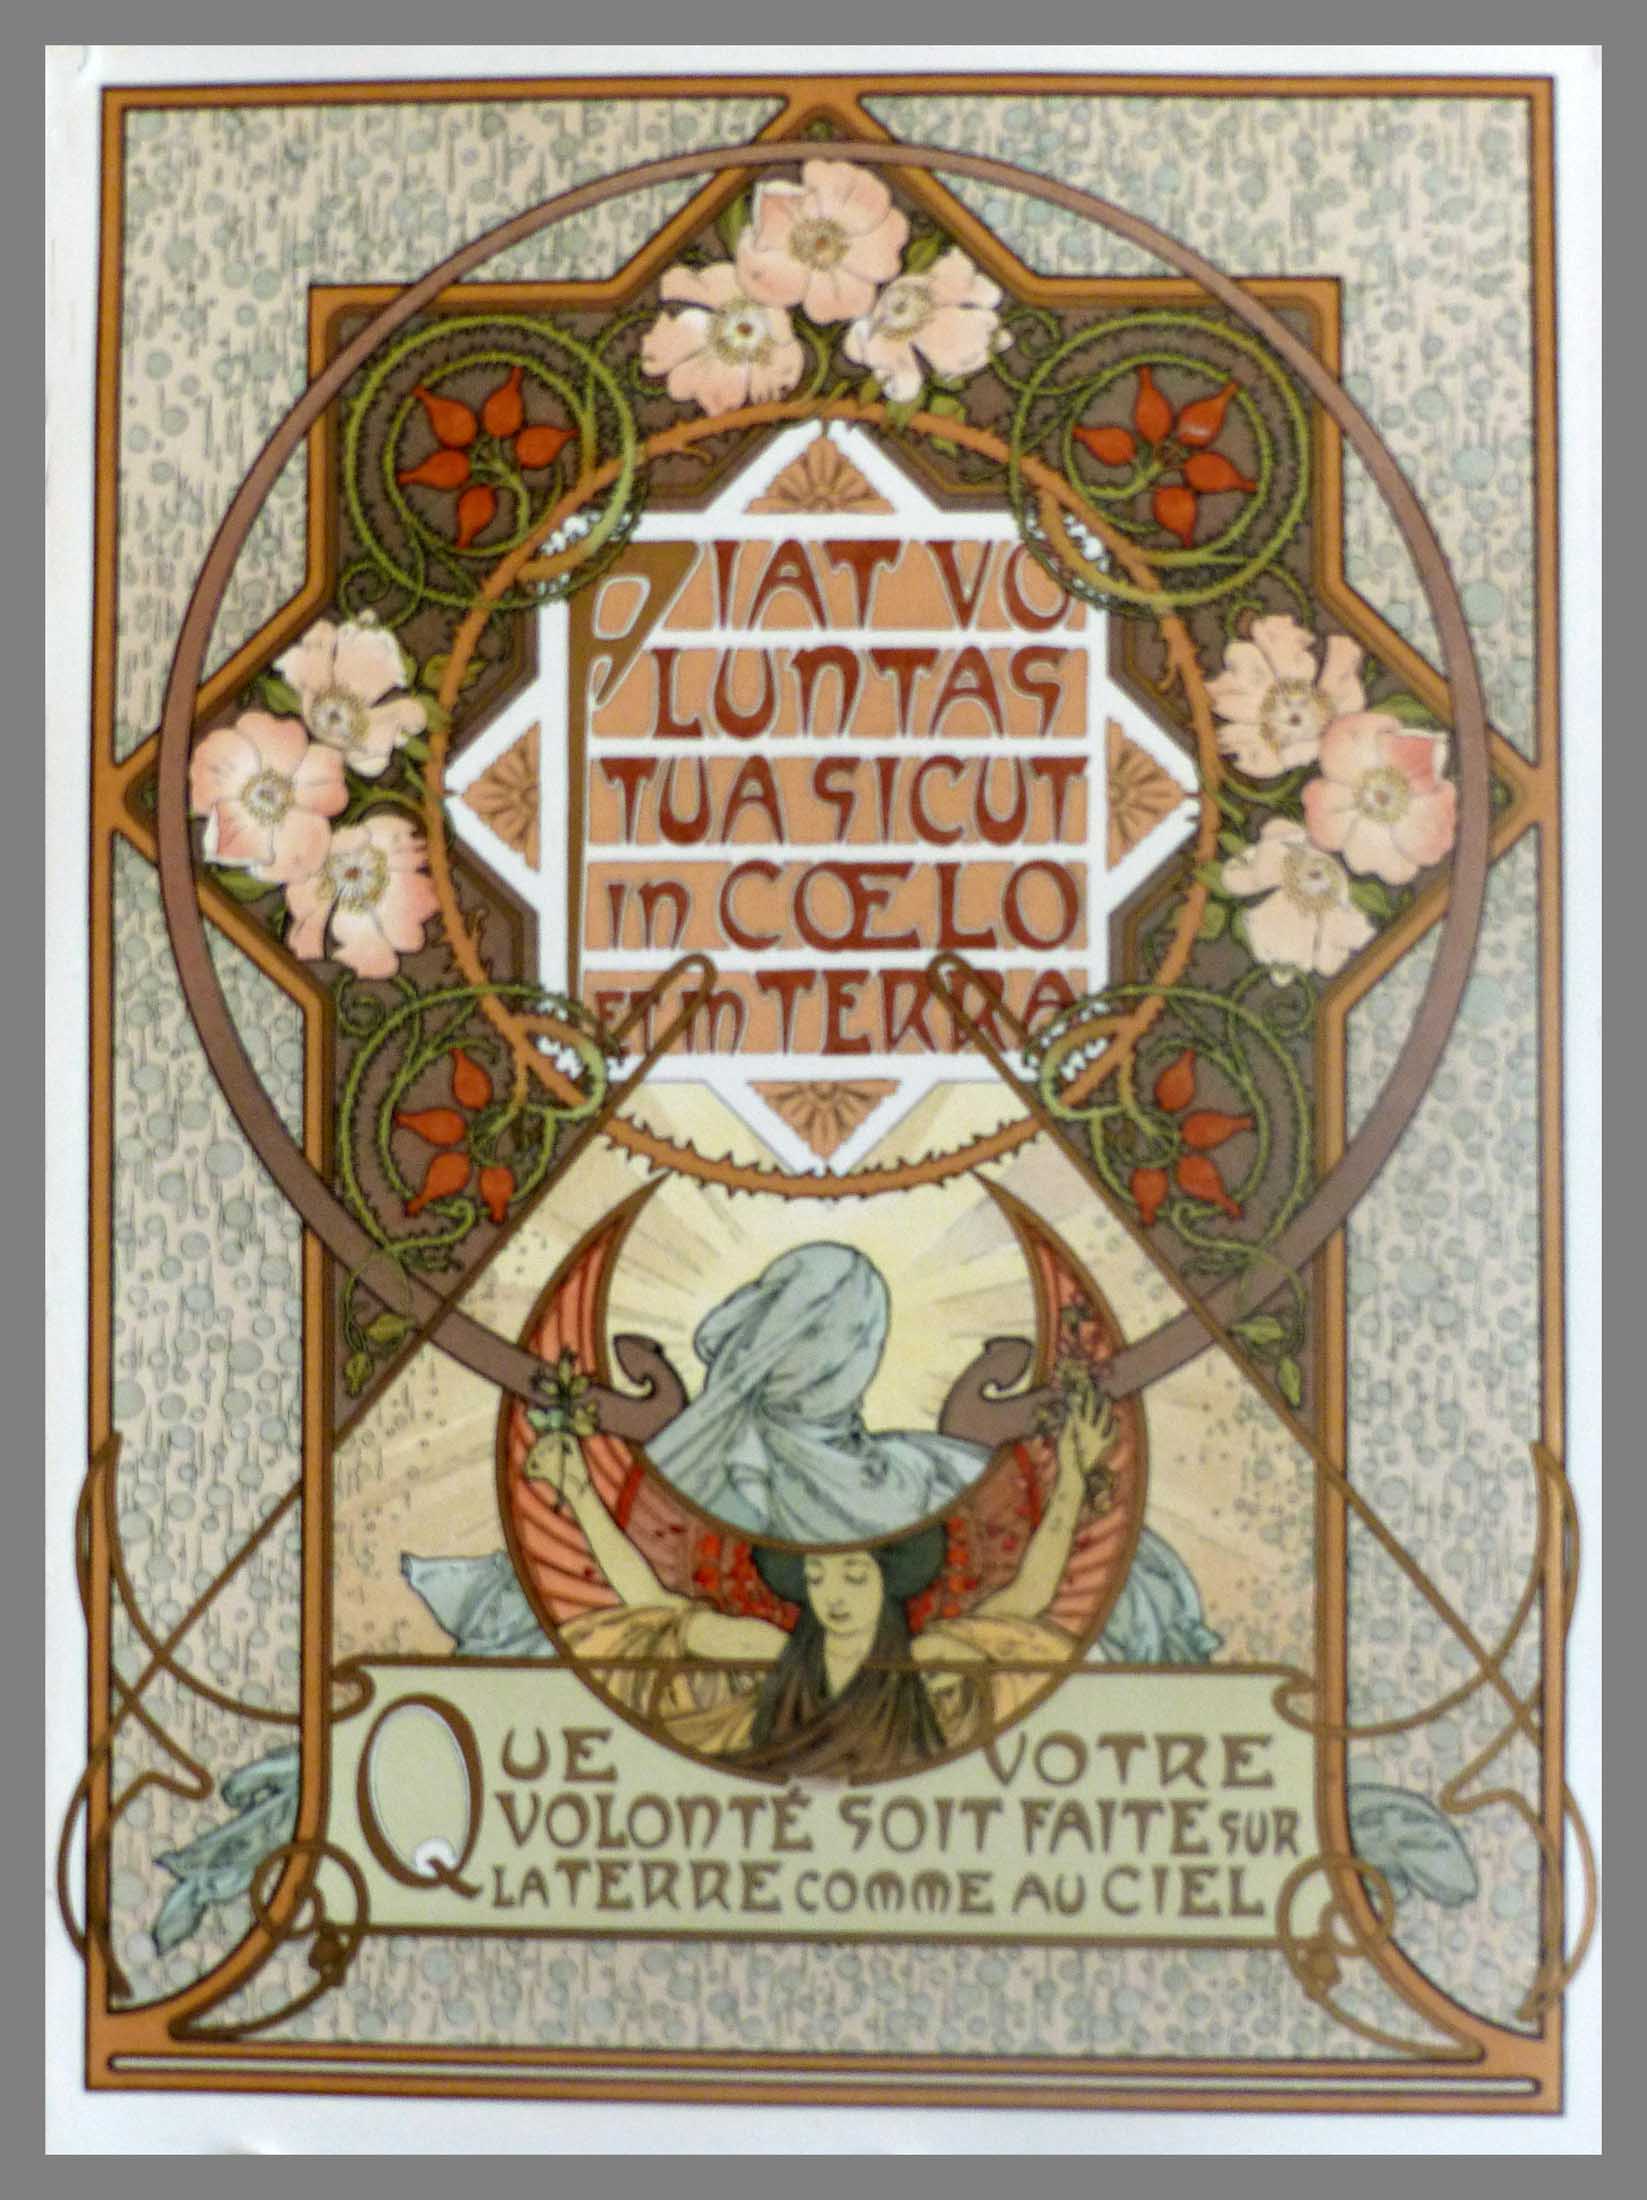 LE PATER QUE VOTRE VOLONTE SOIT FAITE SUR LA TERRE COMME AU CIEL 40 x 30 cm condition A+ Lithographie Originale Alphonse MUCHA 1899